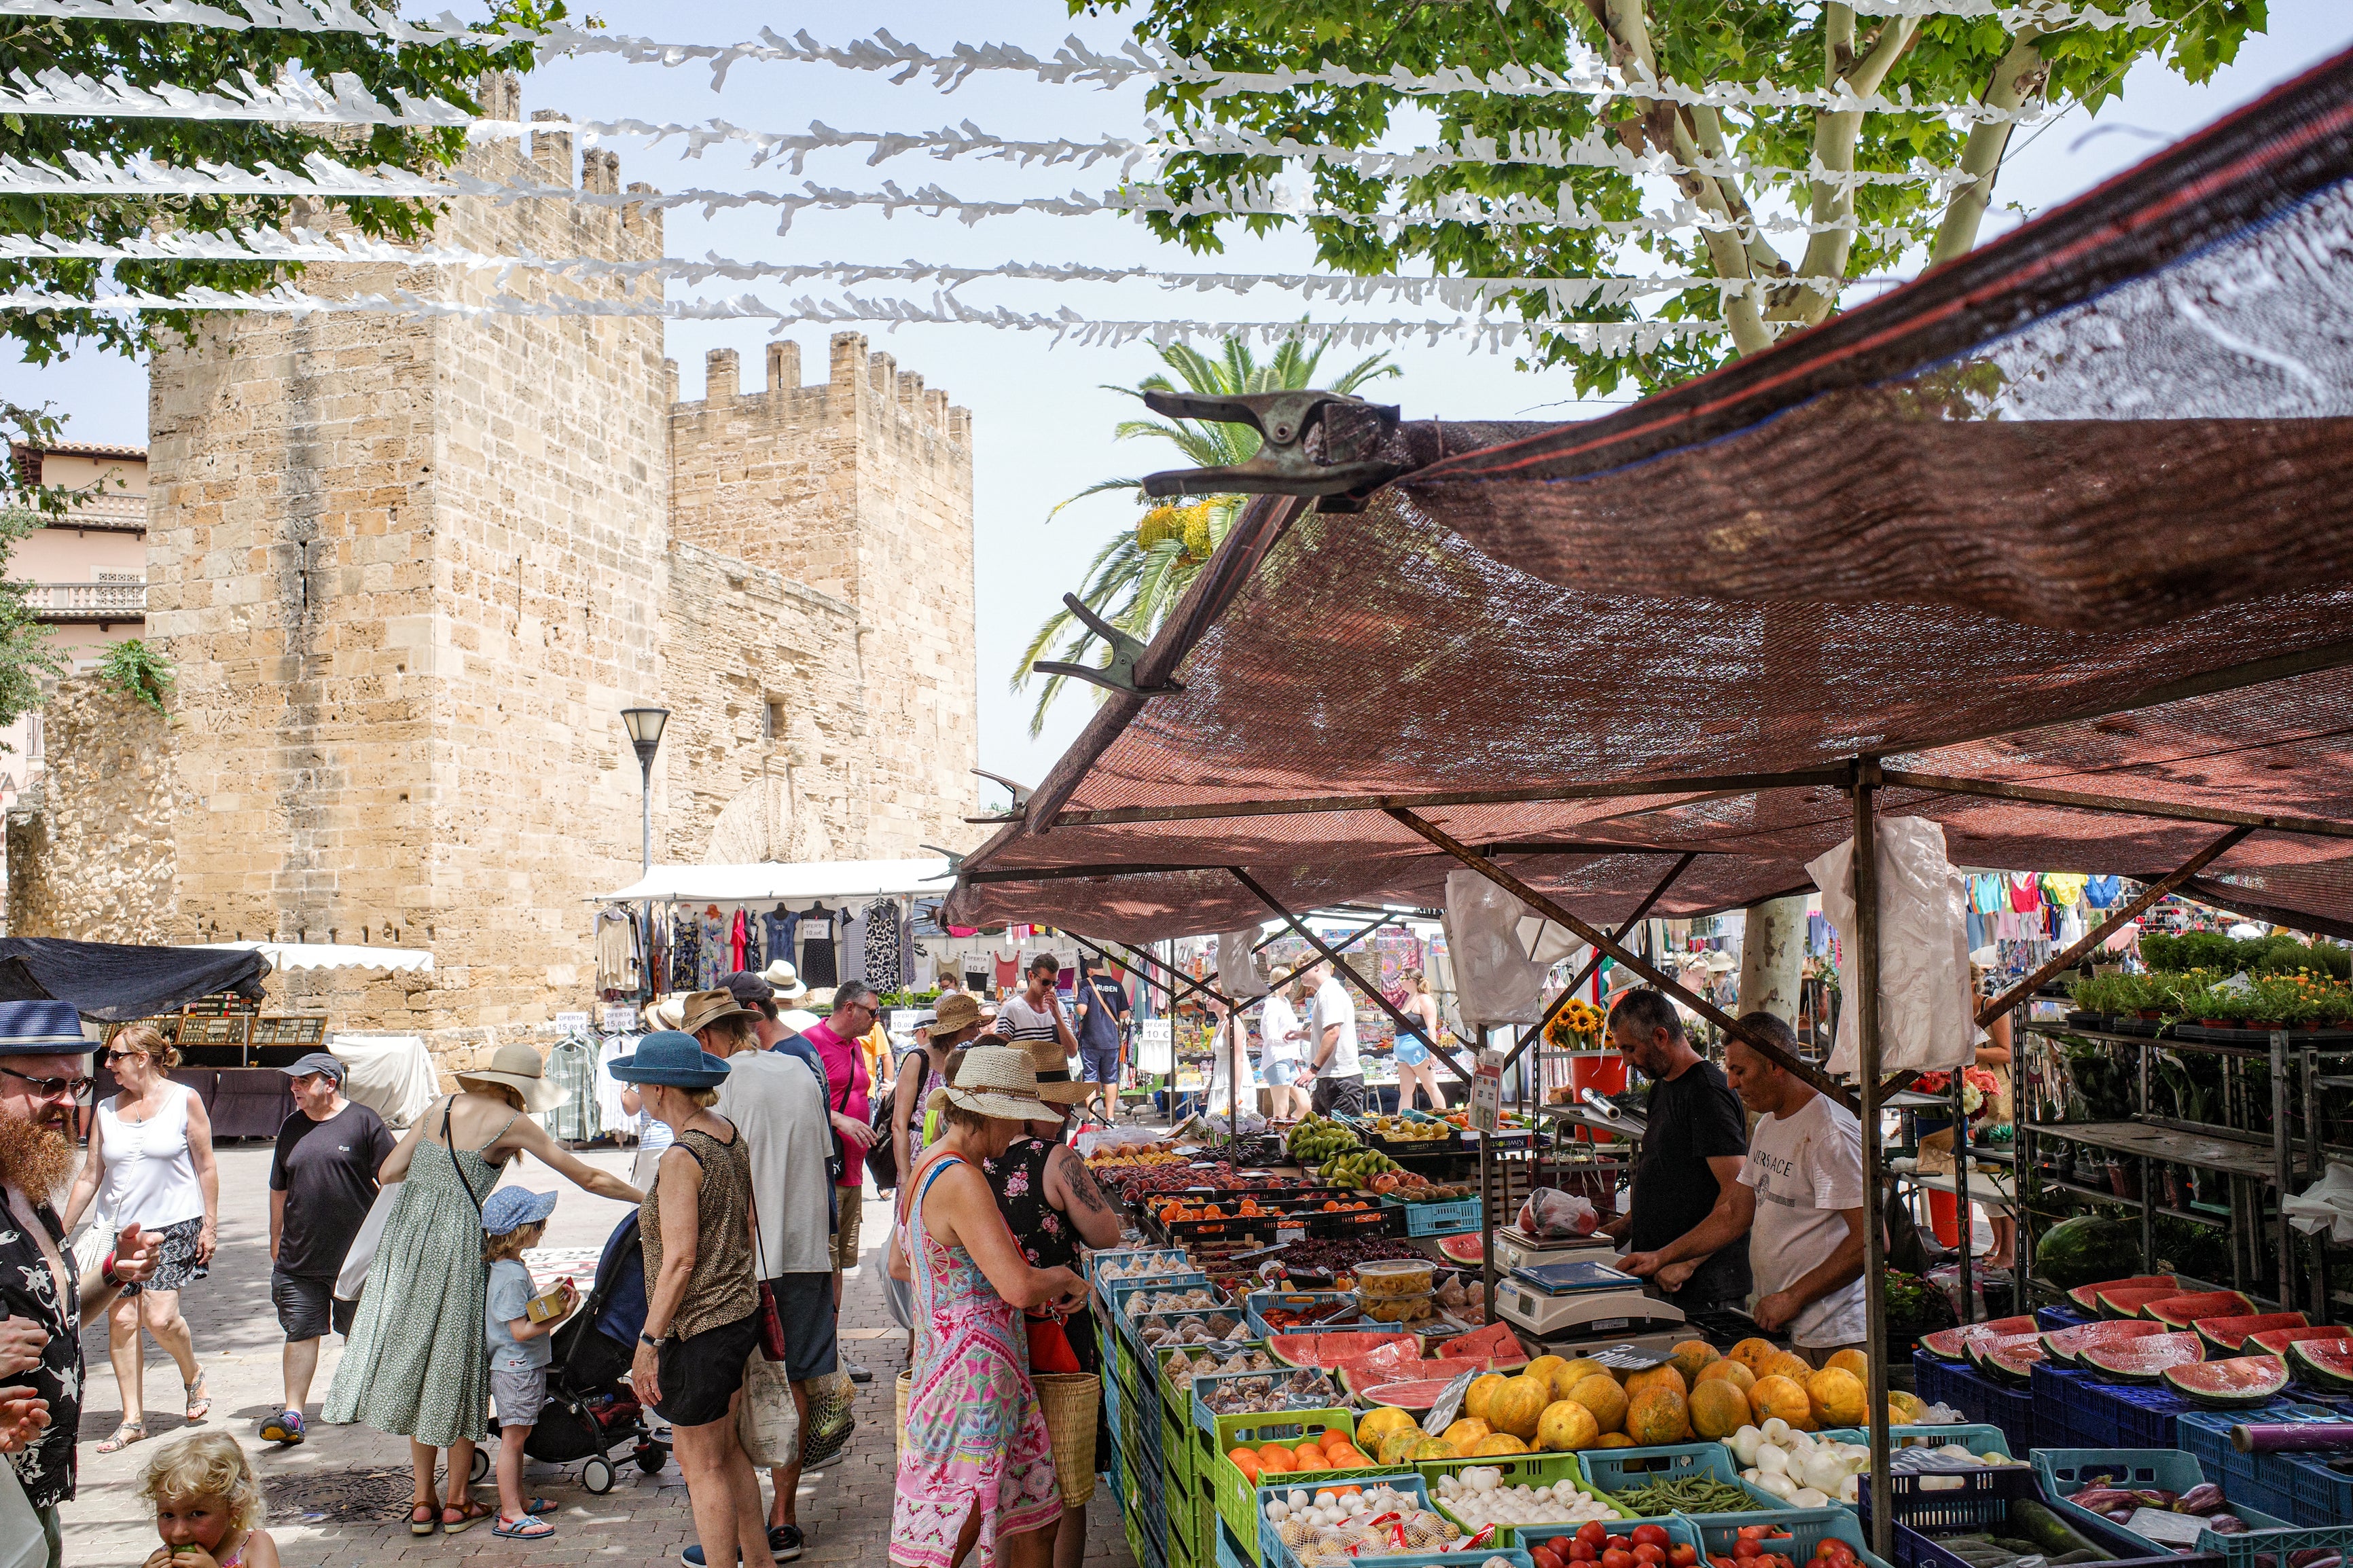 8. Go to the Alcúdia Market - Alcudia, Spain Market day in the Old town of Alcudia, Mallorca